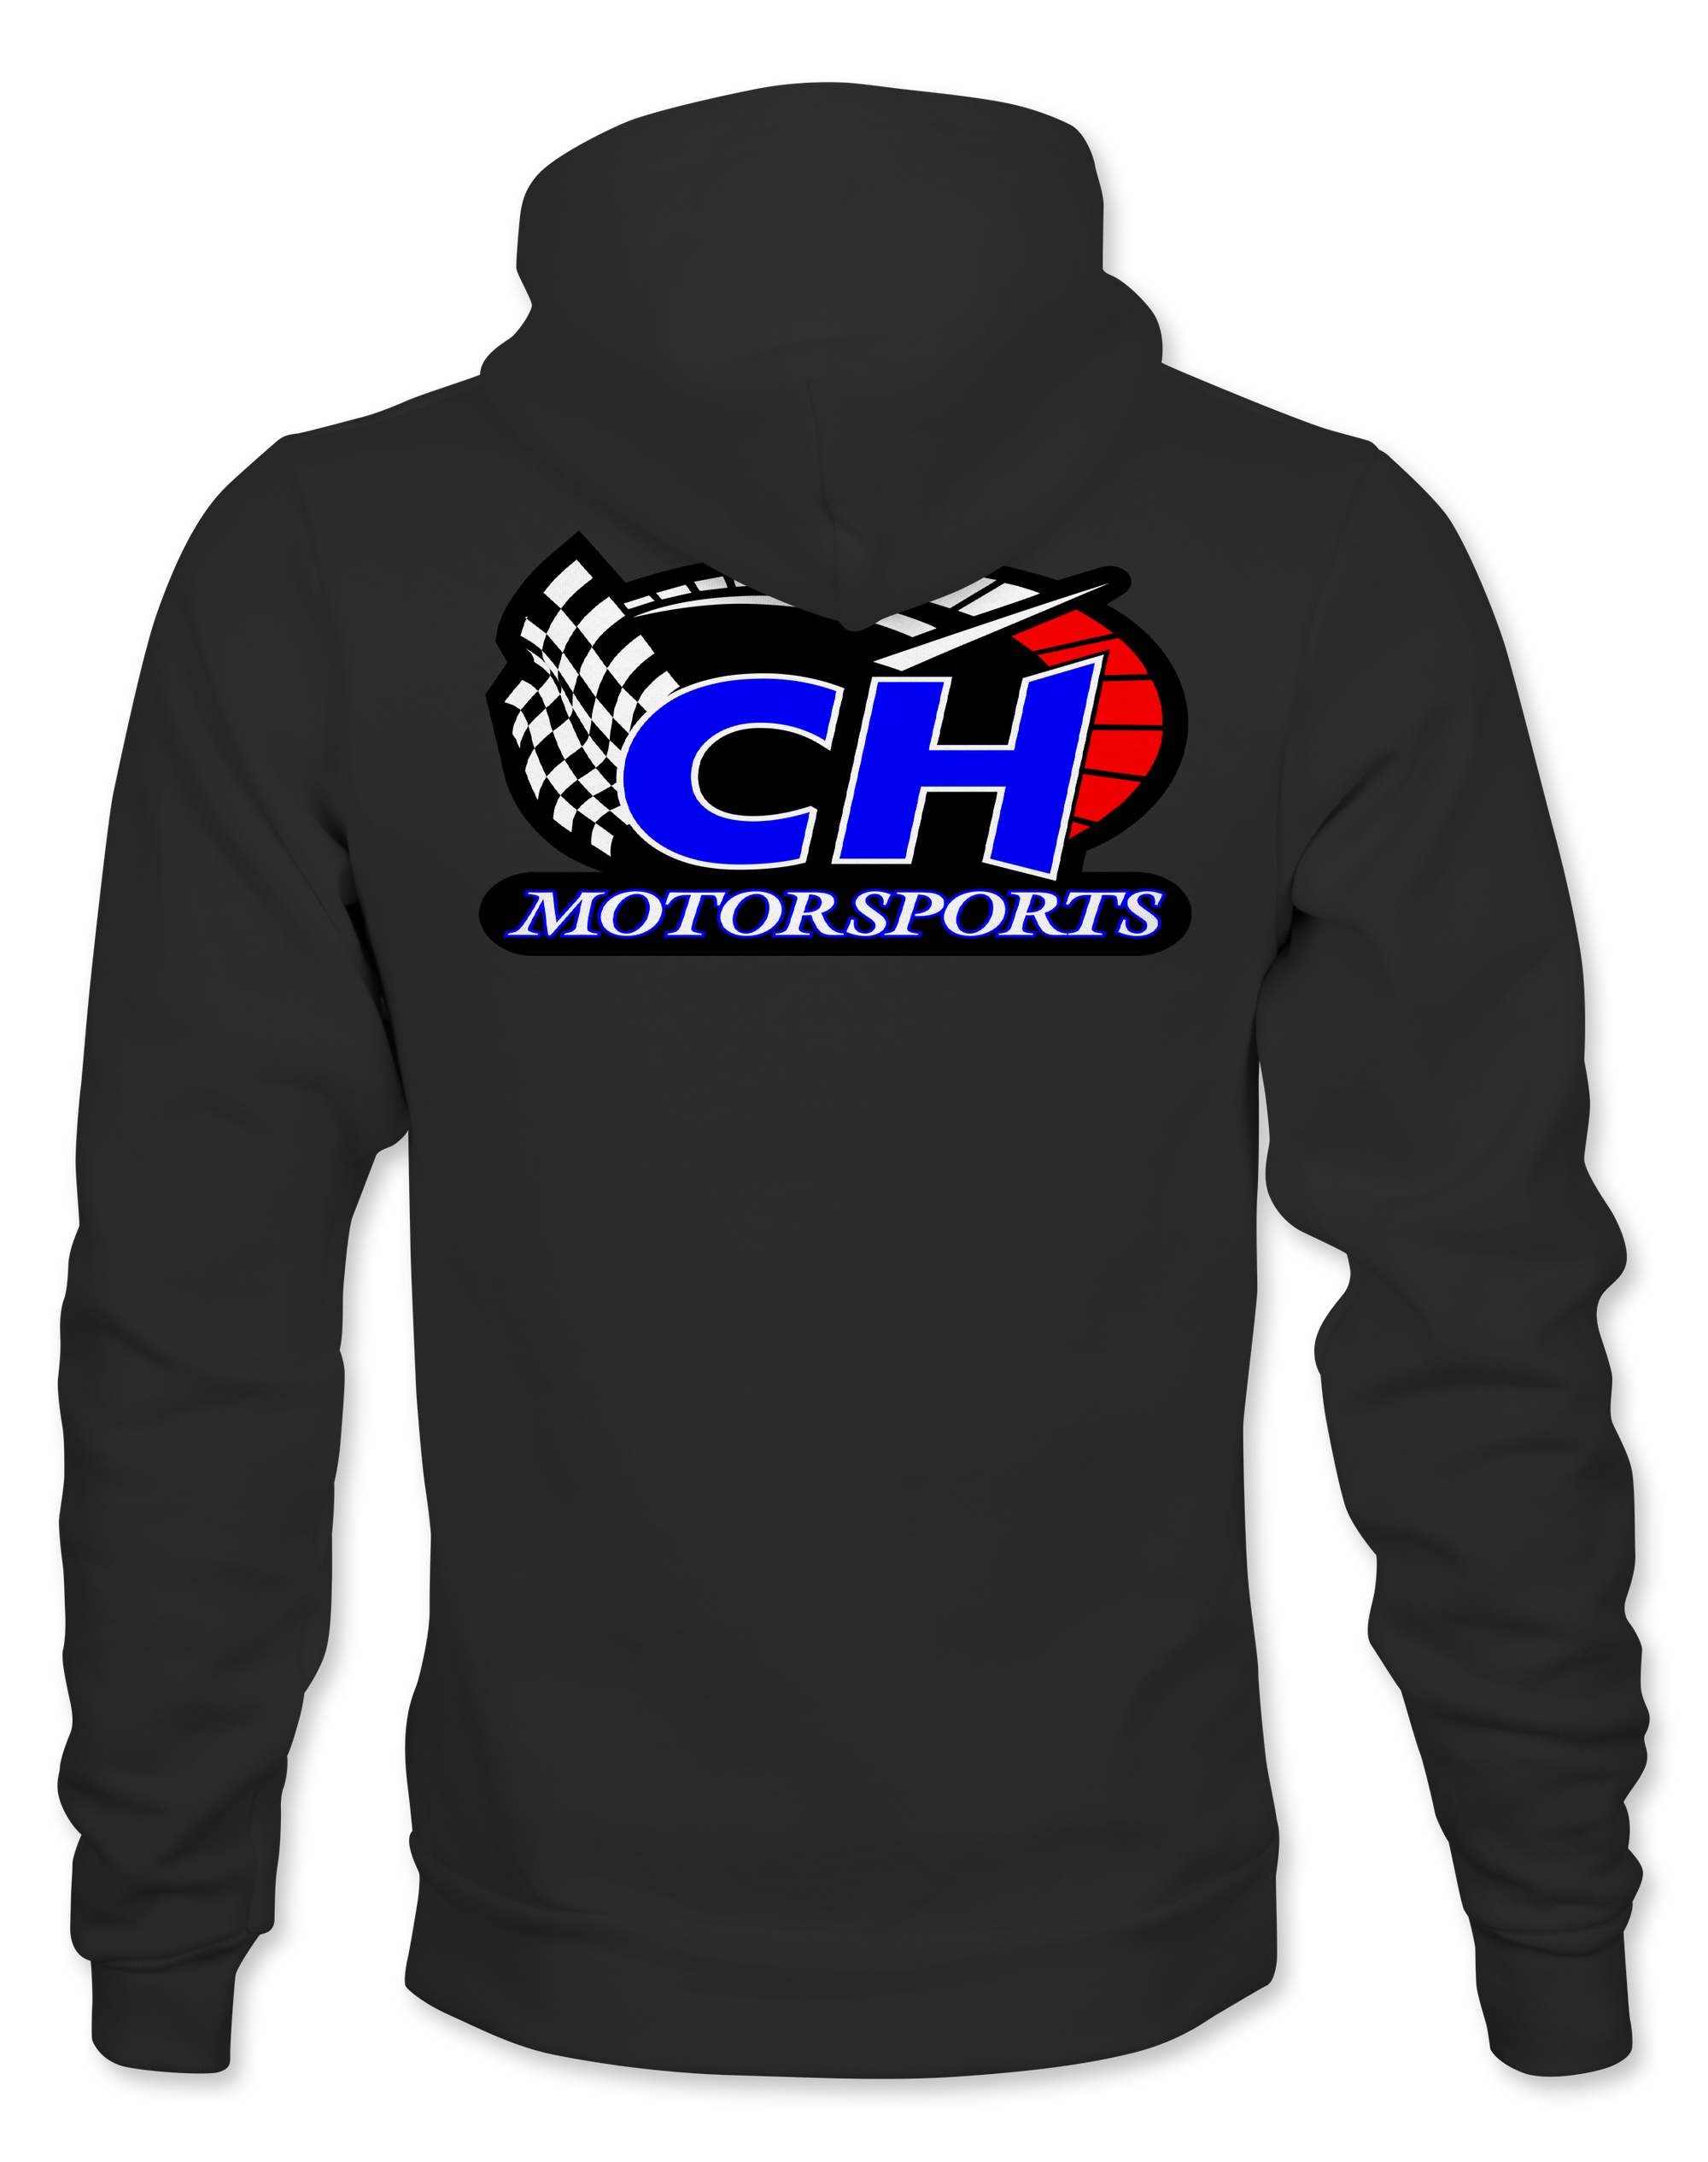 C&H Motorsports Hoodies